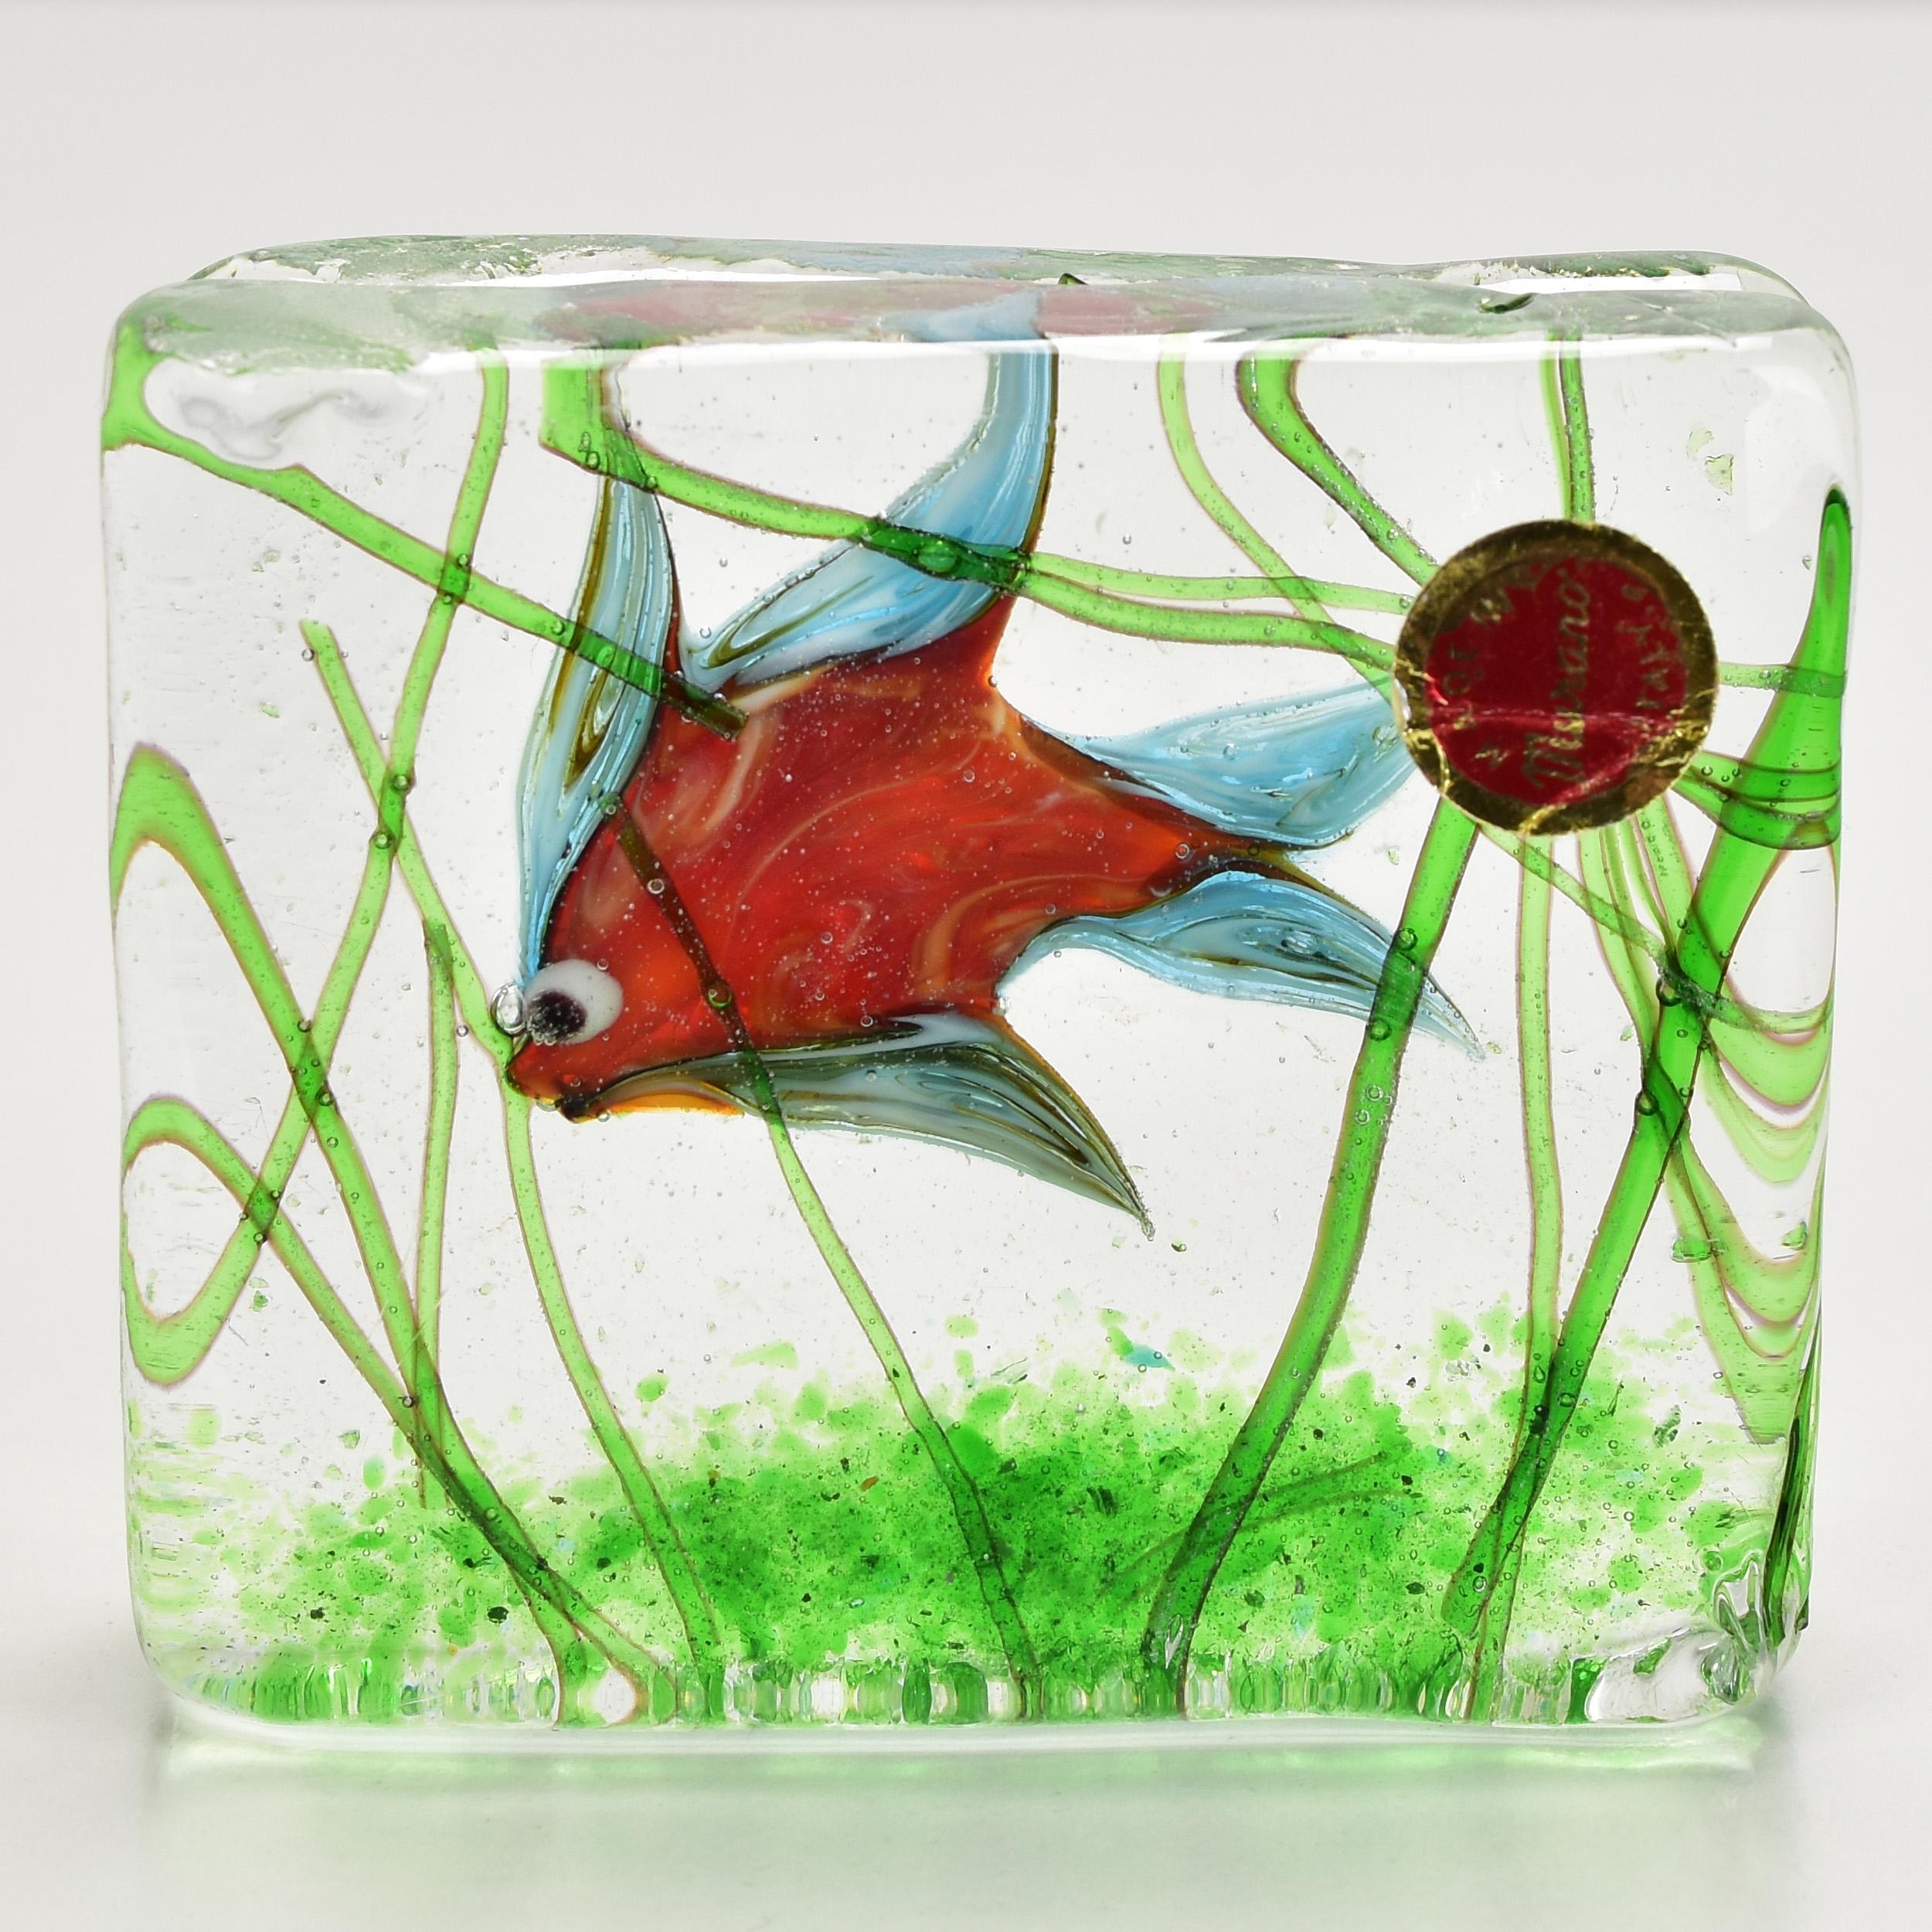 Schöner Murano Aquarium Fischtank Block Briefbeschwerer. Ein bunter tropischer Fisch in einem Glasblock mit grünem Seegras. Eine äußerst dekorative Skulptur für jeden Schreibtisch oder jedes Regal.
 